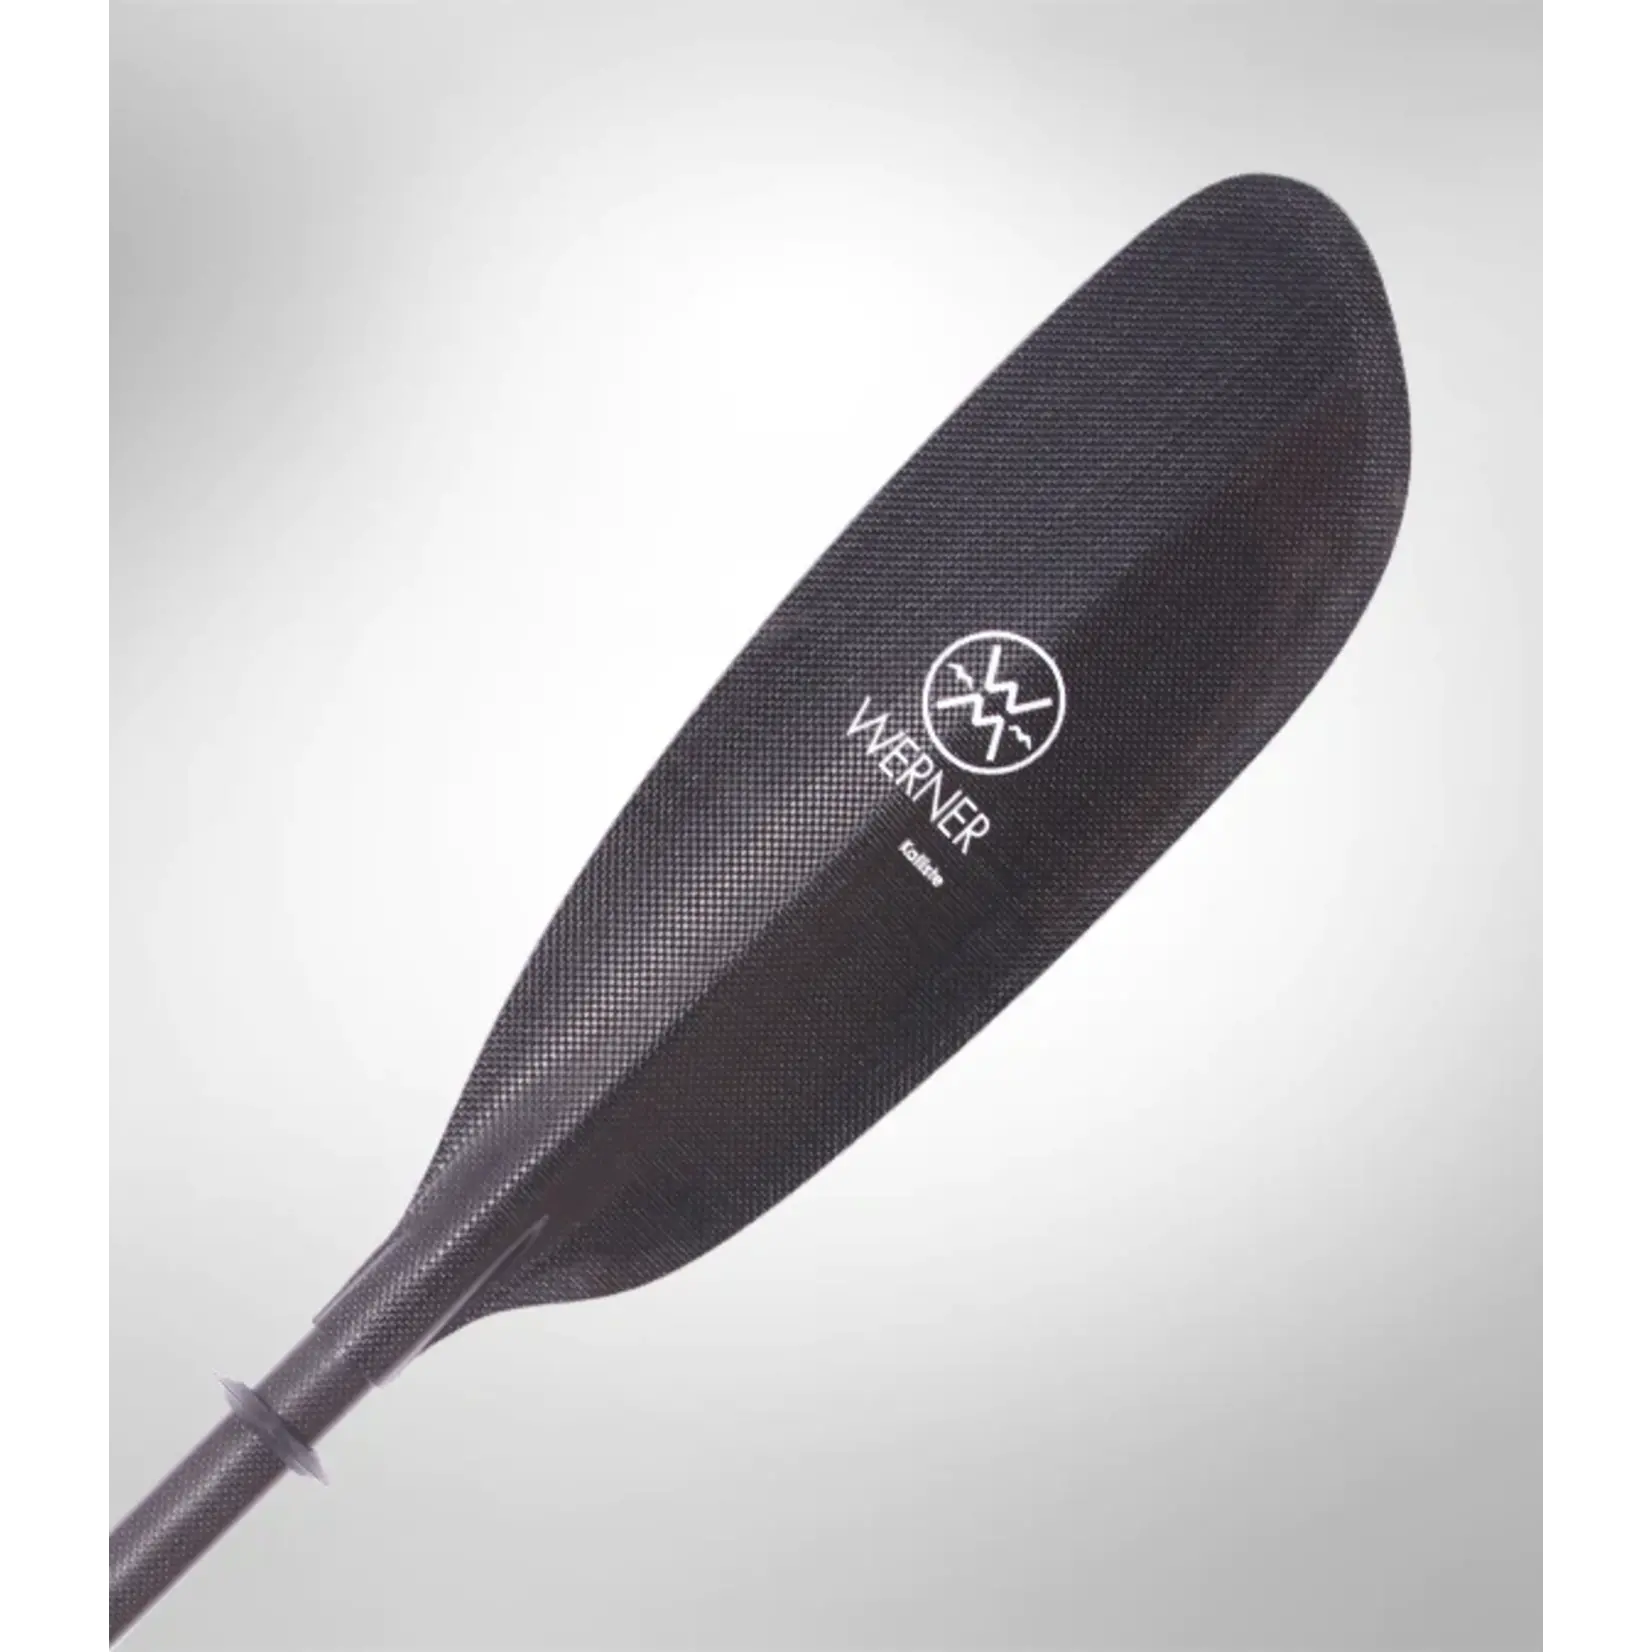 Werner Paddles - Kalliste Carbon 2 Piece Bent Shaft Paddle